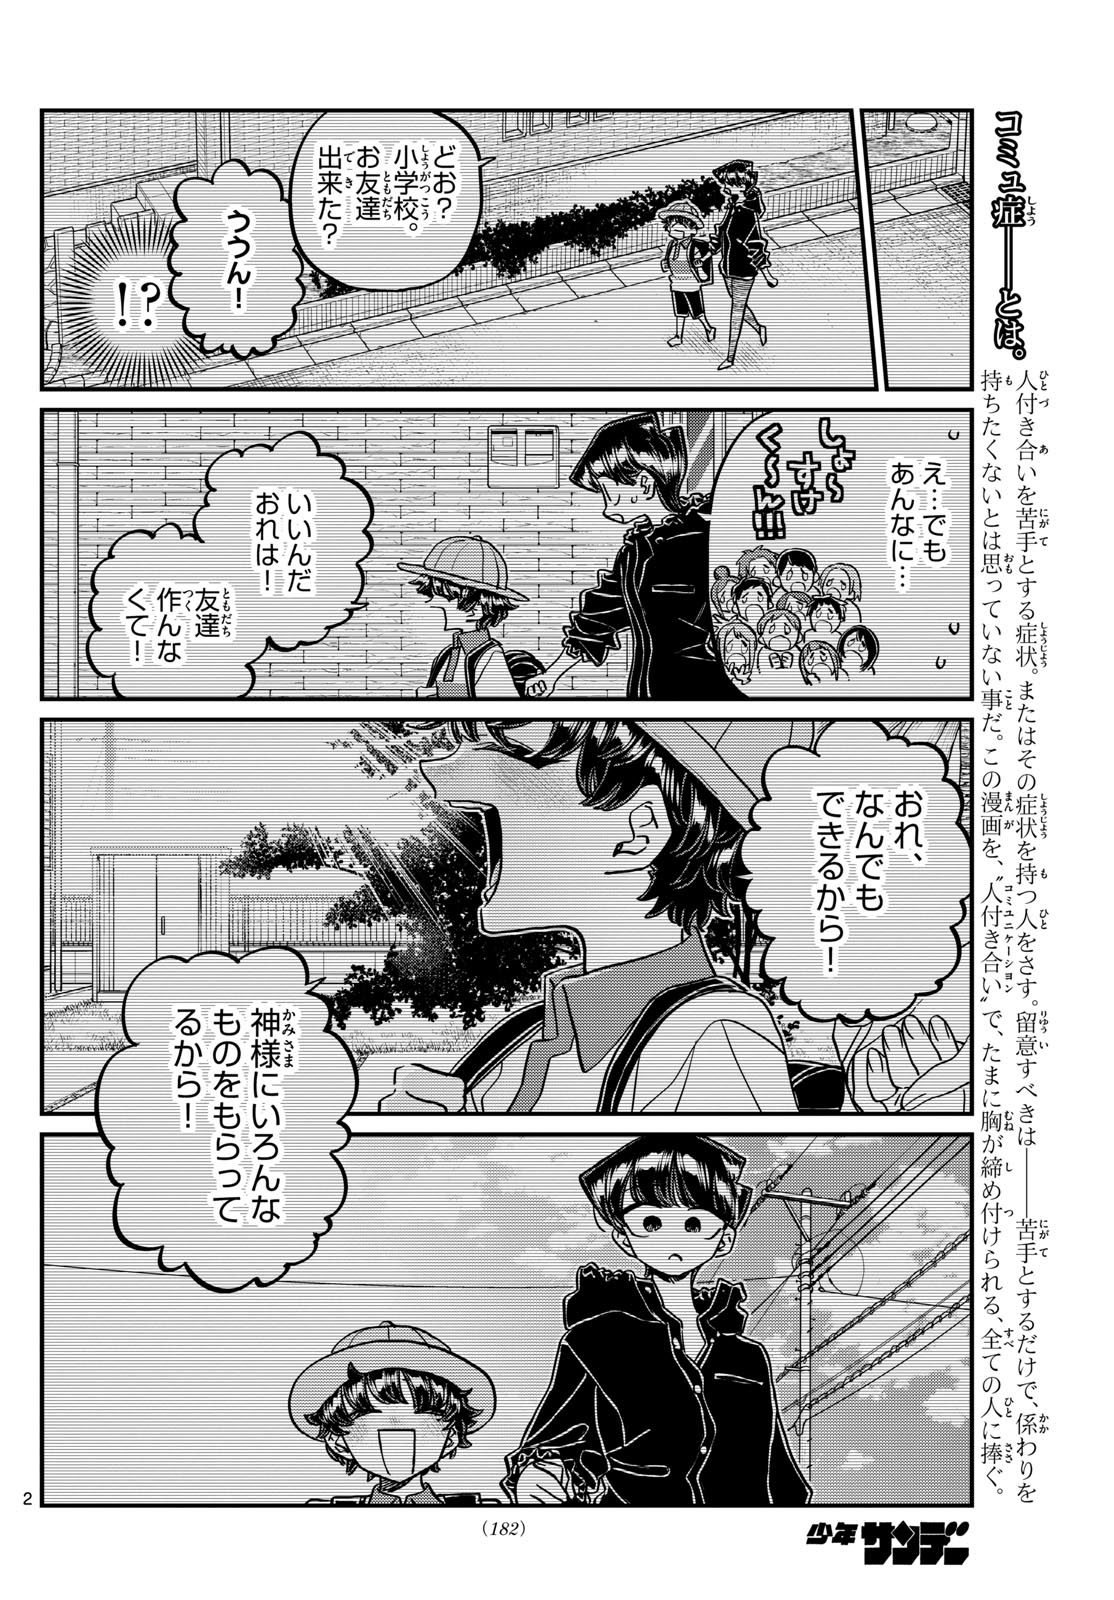 Komi-san wa Komyushou Desu - Chapter 461 - Page 2